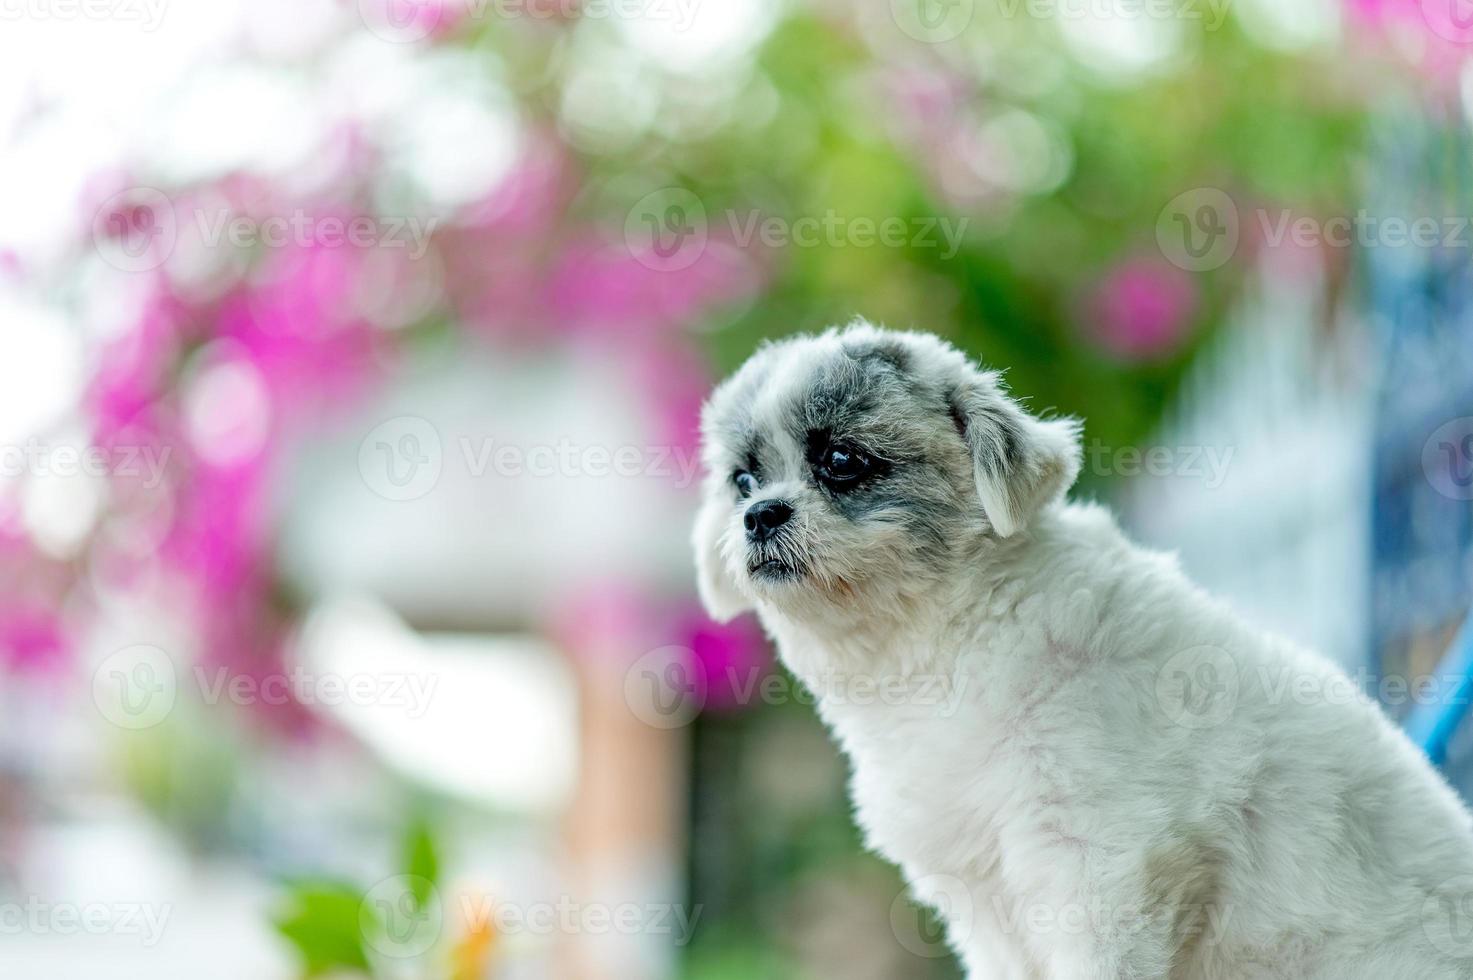 vit hundbild, söt fotografering, kärlekshundkoncept foto